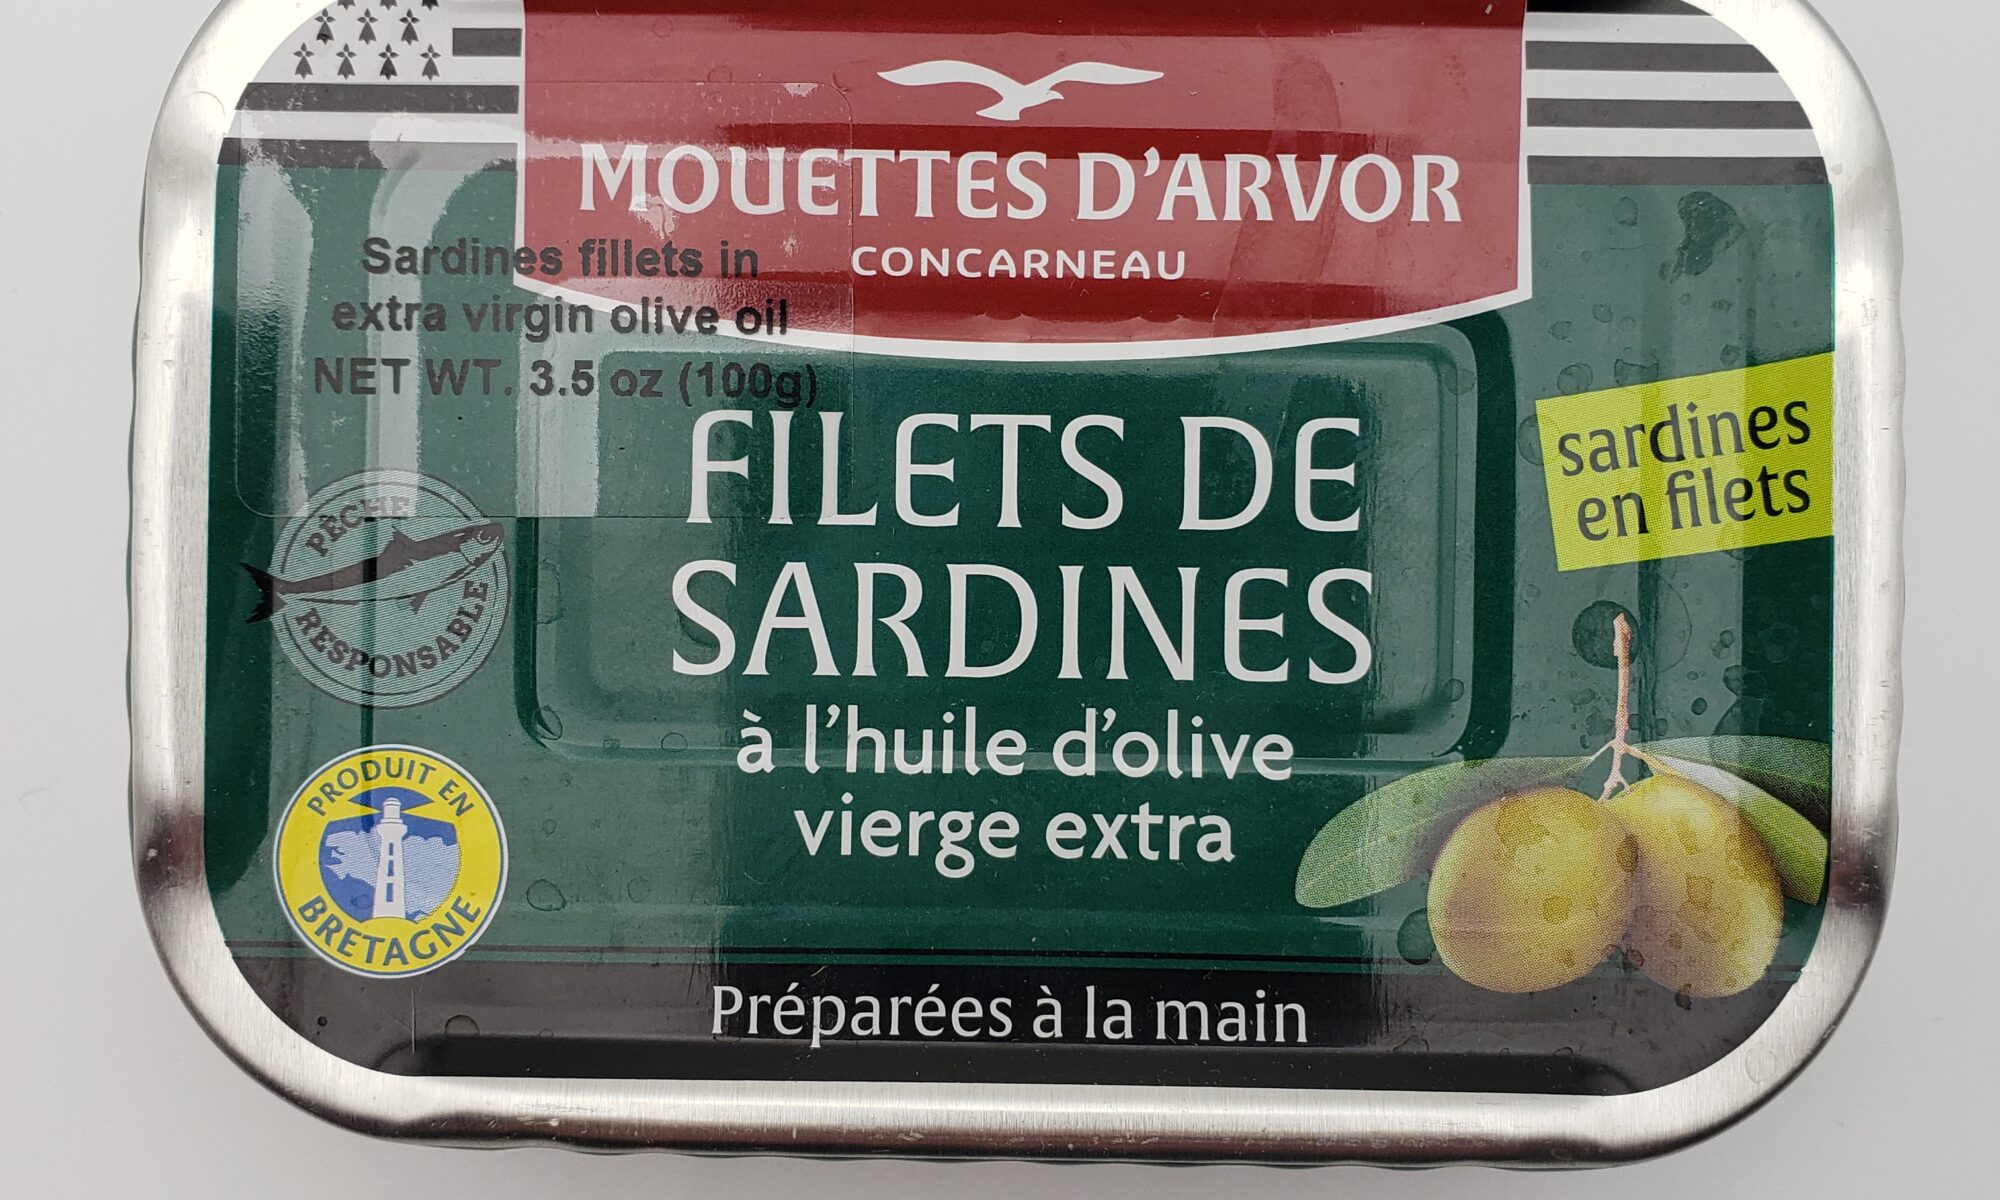 Image of mouettes d'arvor sardine fillets in olive oil